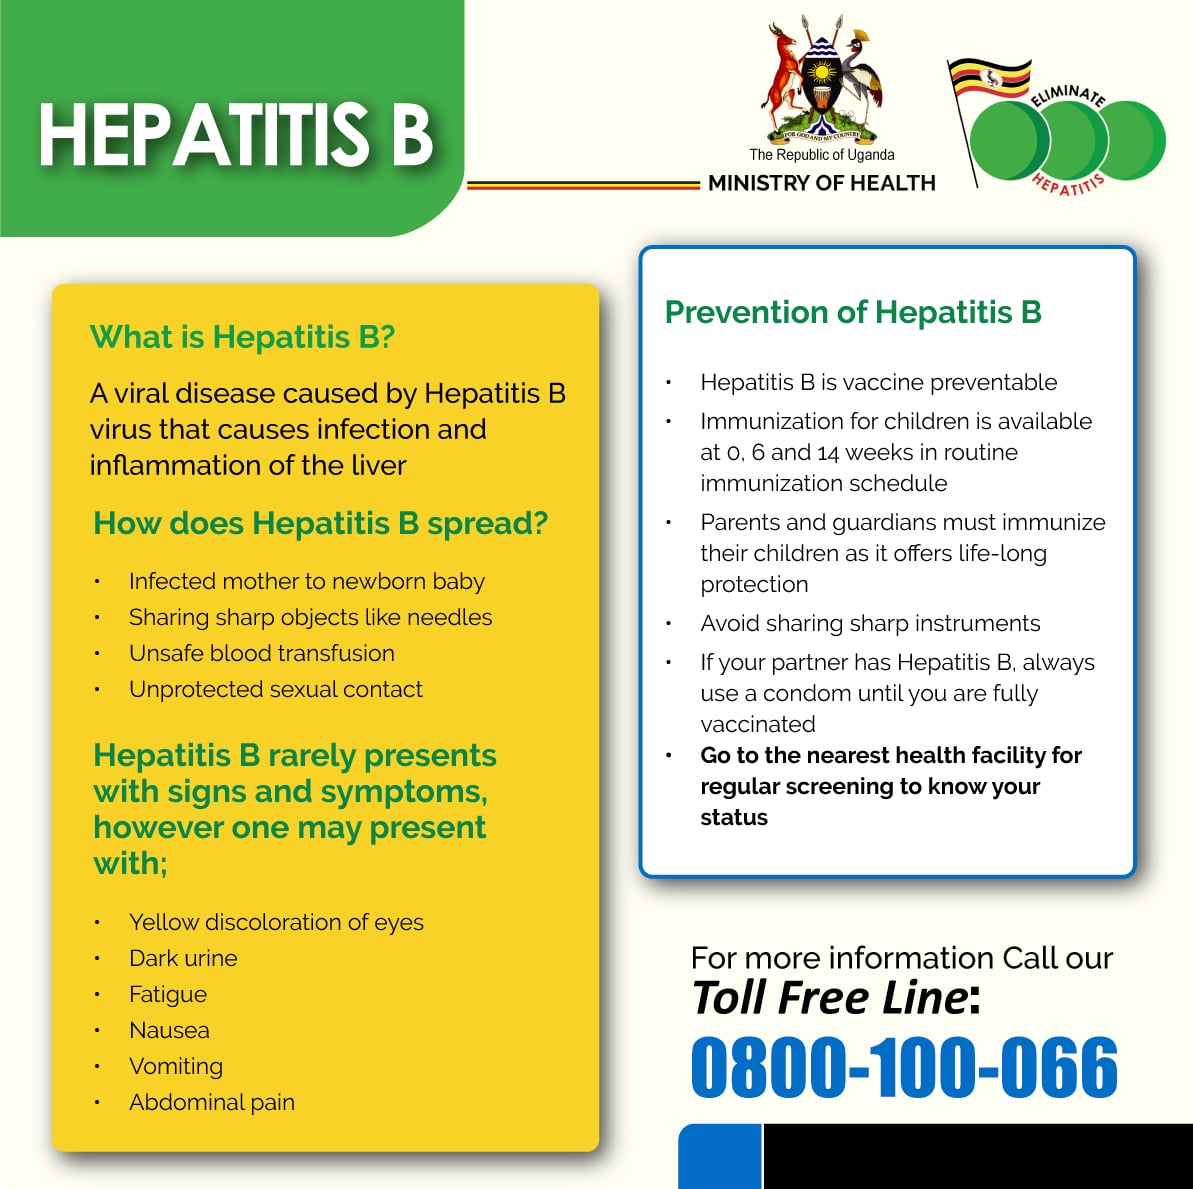 What is Hepatitis B